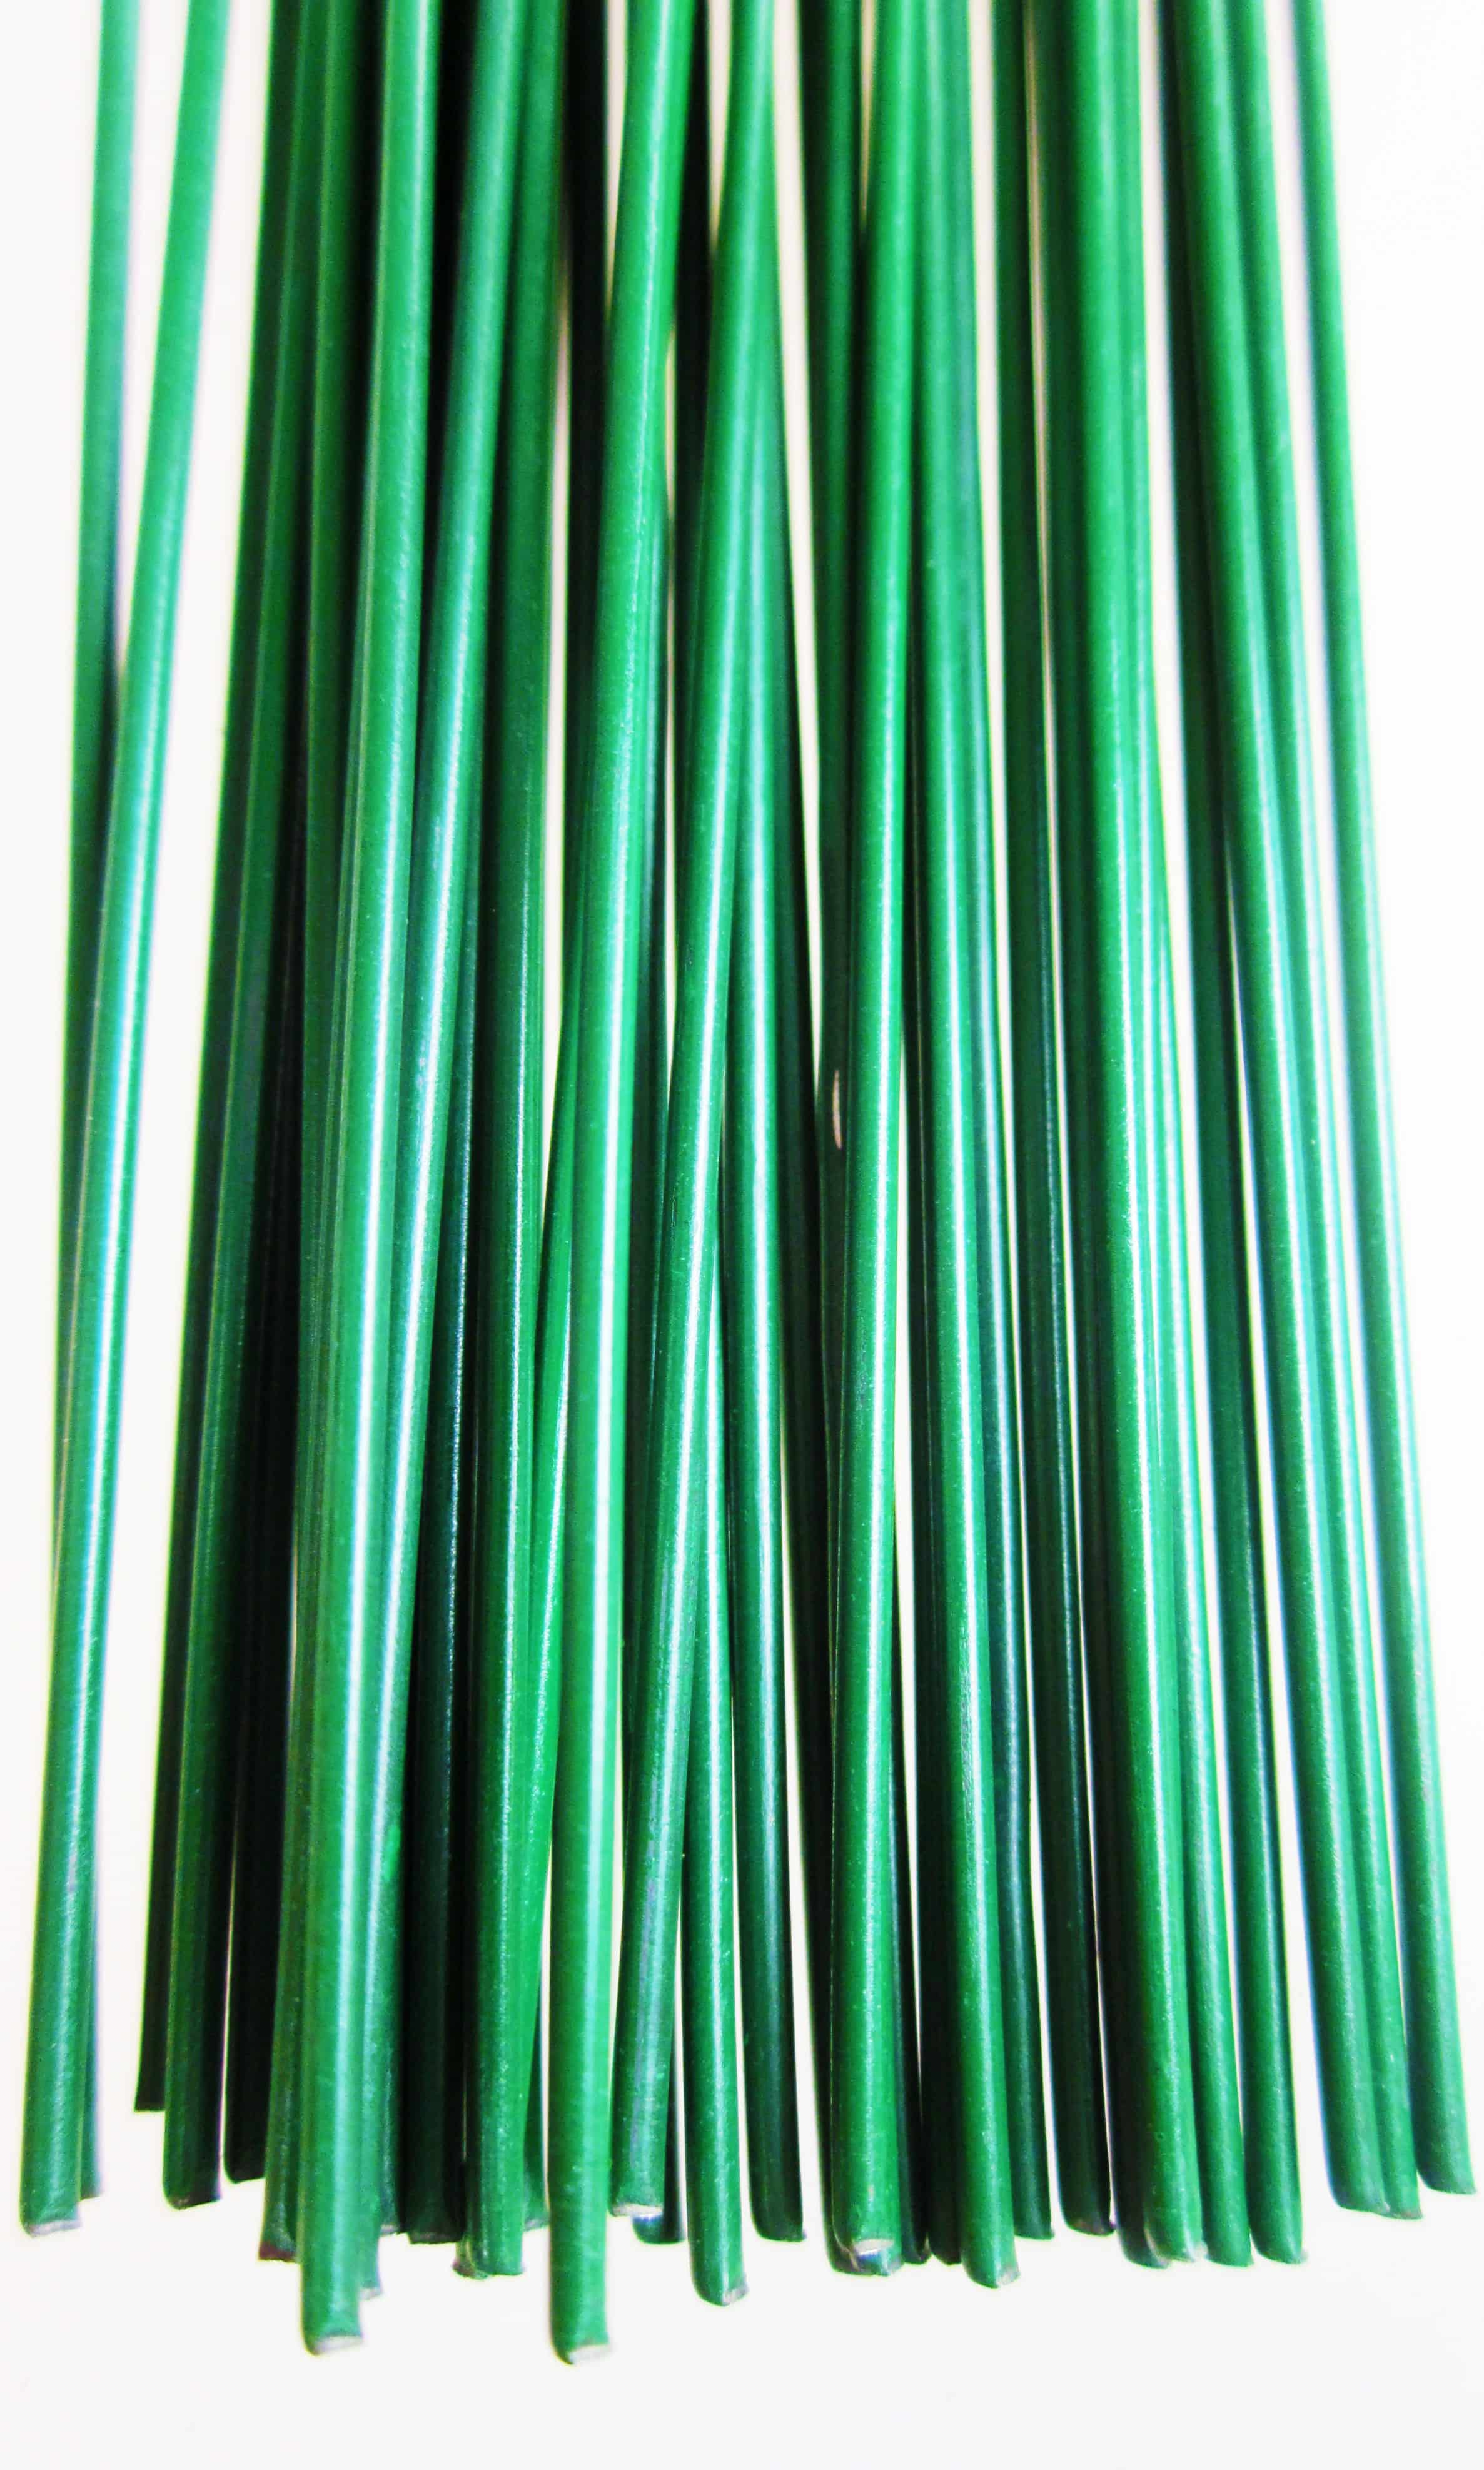 Steckdraht, grün lackiert, Ø 0,7 mm, Längen 350 mm, 100g